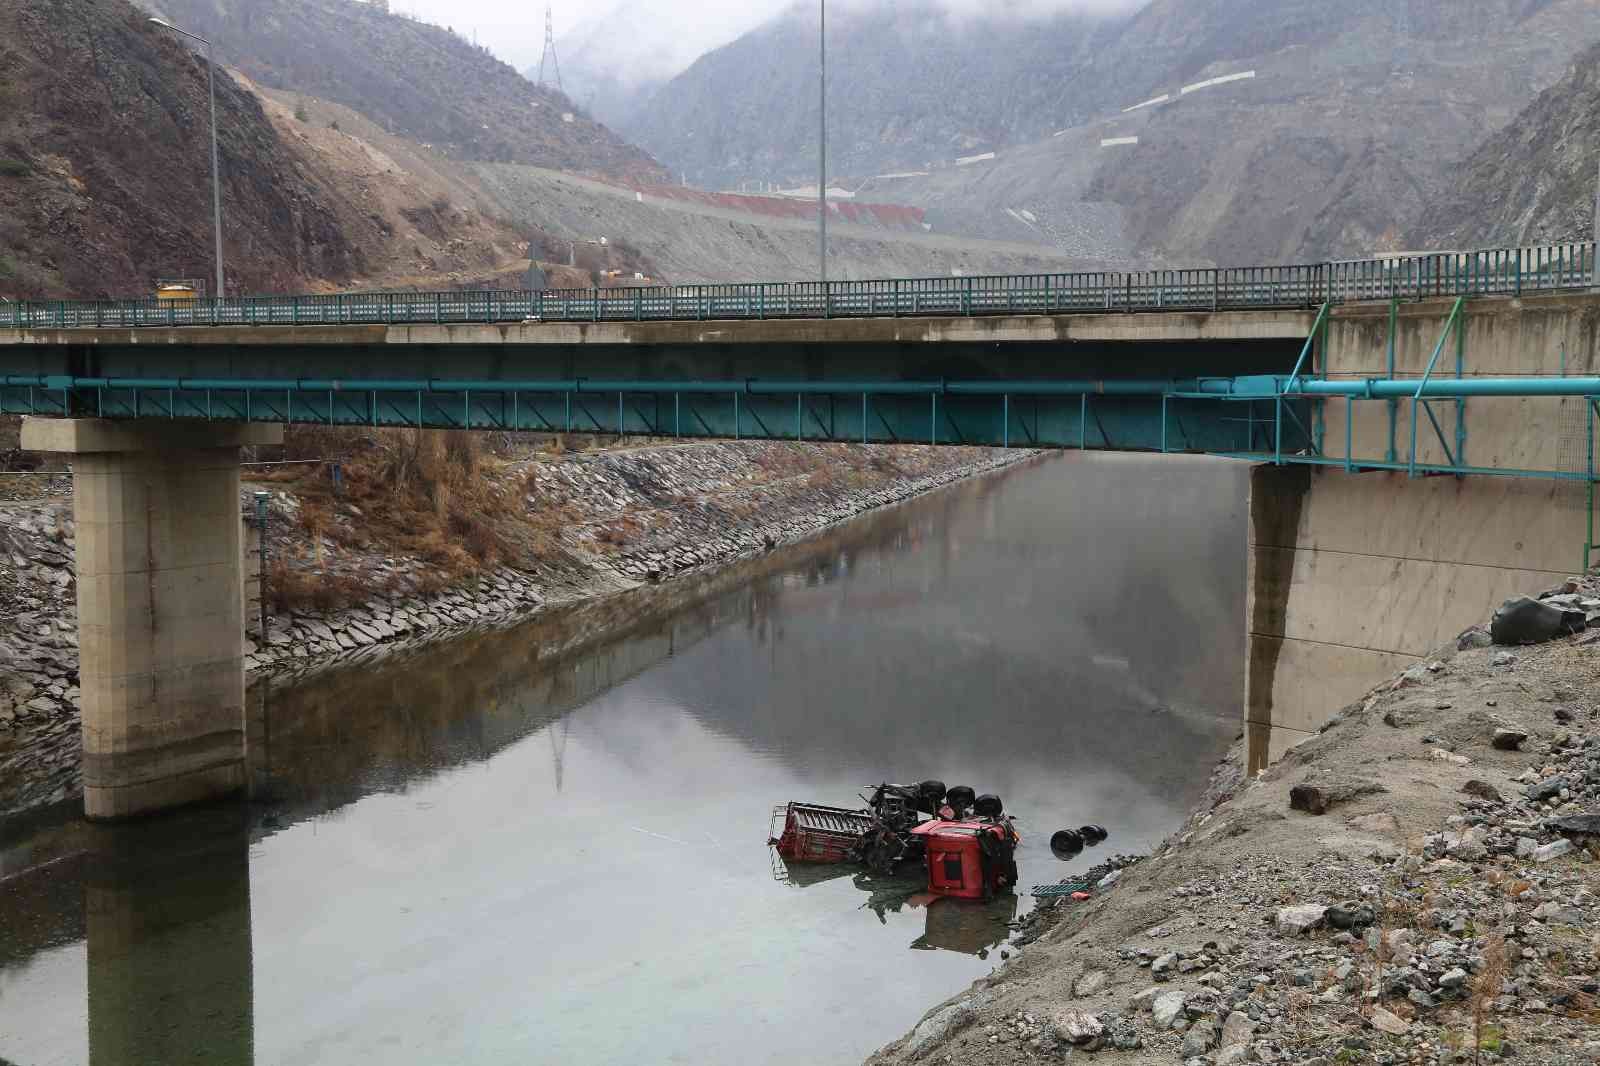 Virajı alamayan tır köprüden nehre düştü, sürücü baraj suları kapatılınca bulundu #artvin